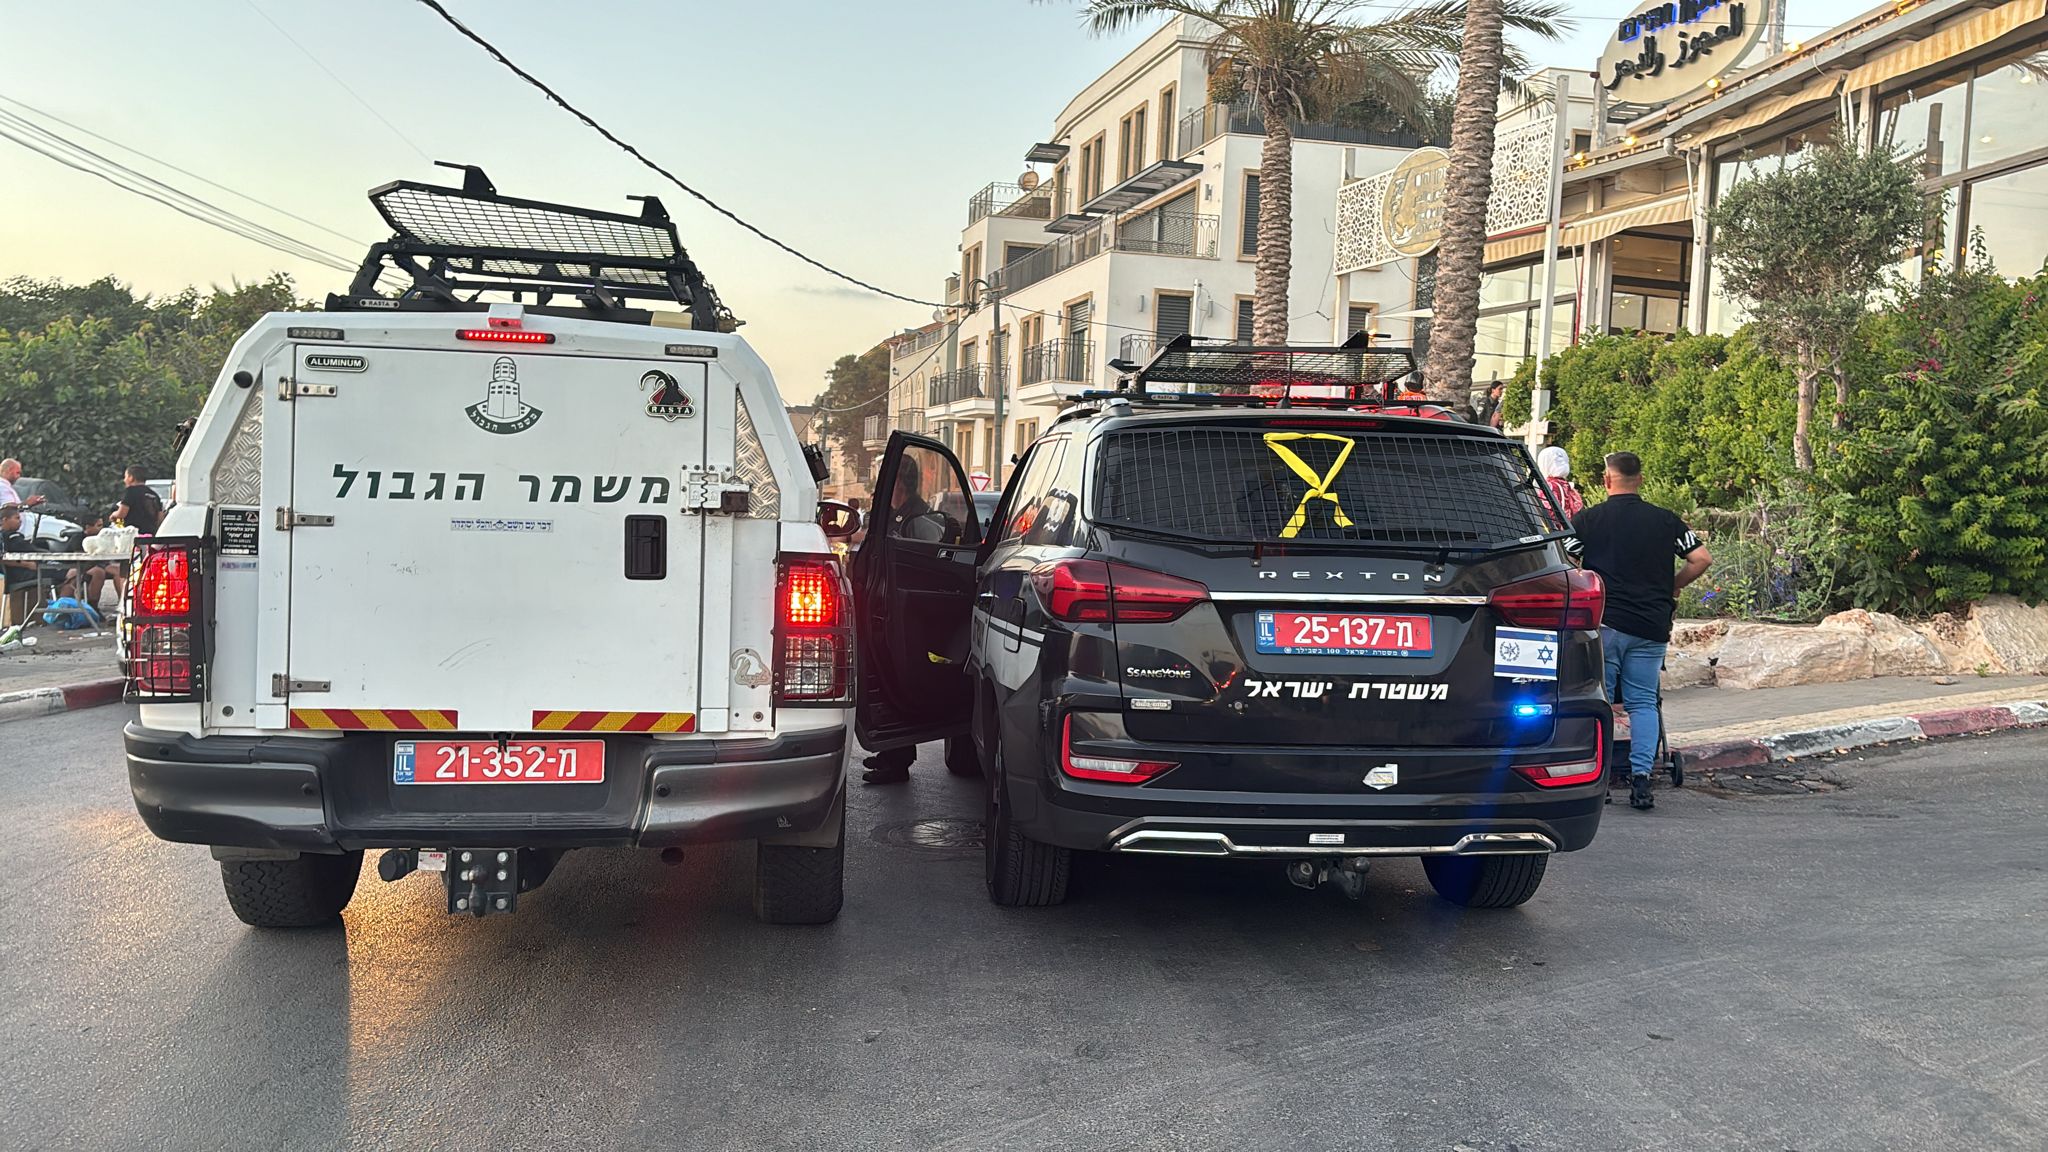 يافا: إصابة متوسطة لرجل من نحف في حادثة إطلاق نار بحي العجمي